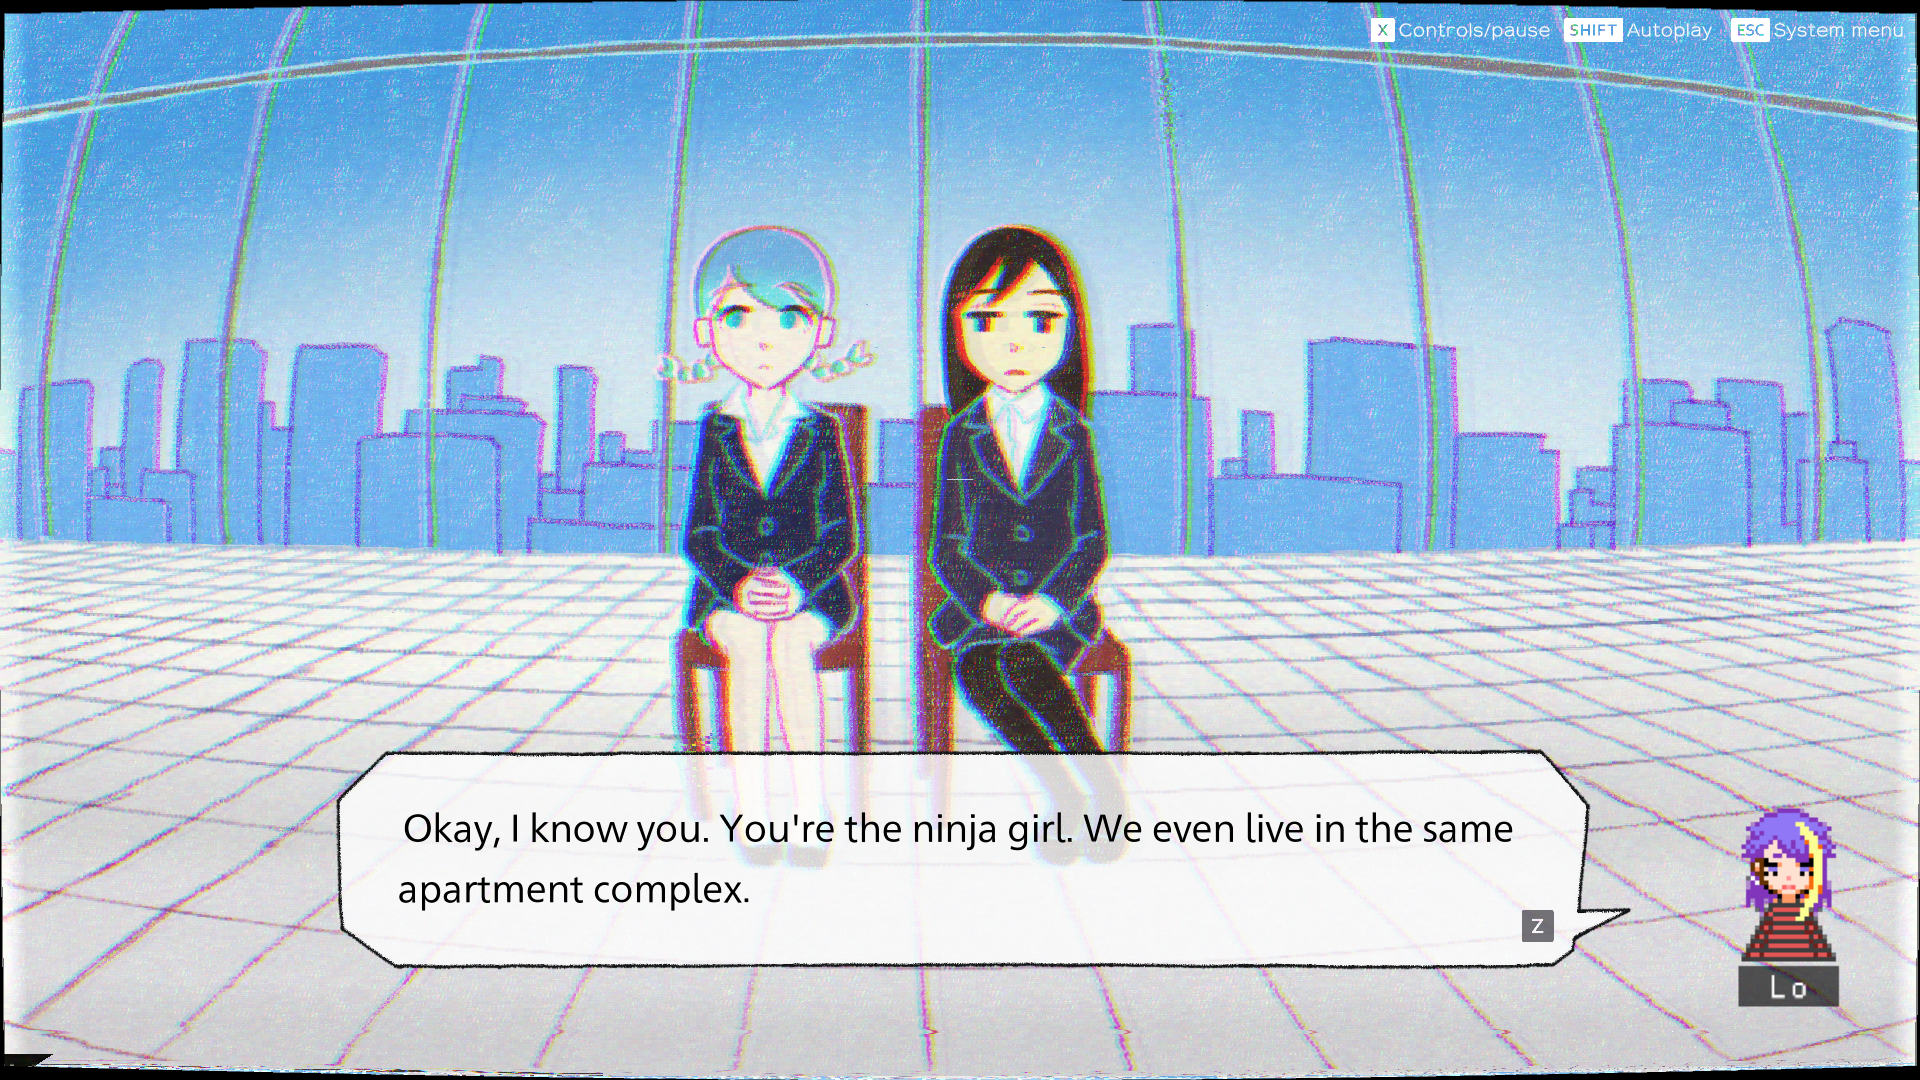 Imagem das personagens Sayoko e Yoru de ghostpia em uma entrevista de emprego